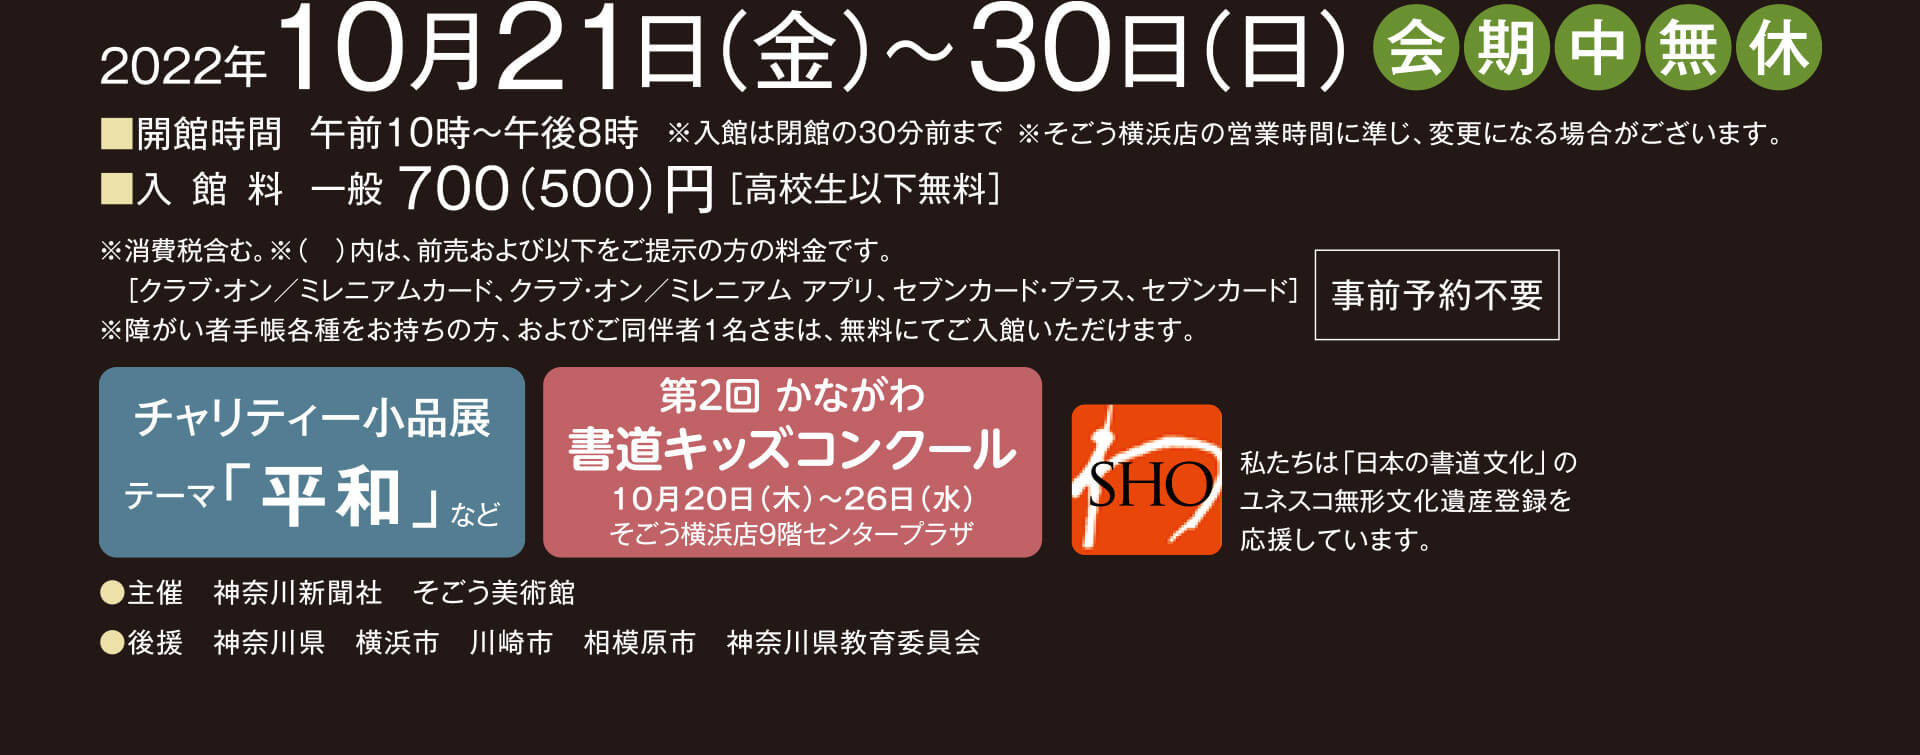 神奈川書家三十人展第35回特別記念 神奈川の書 すべてを魅せる100人